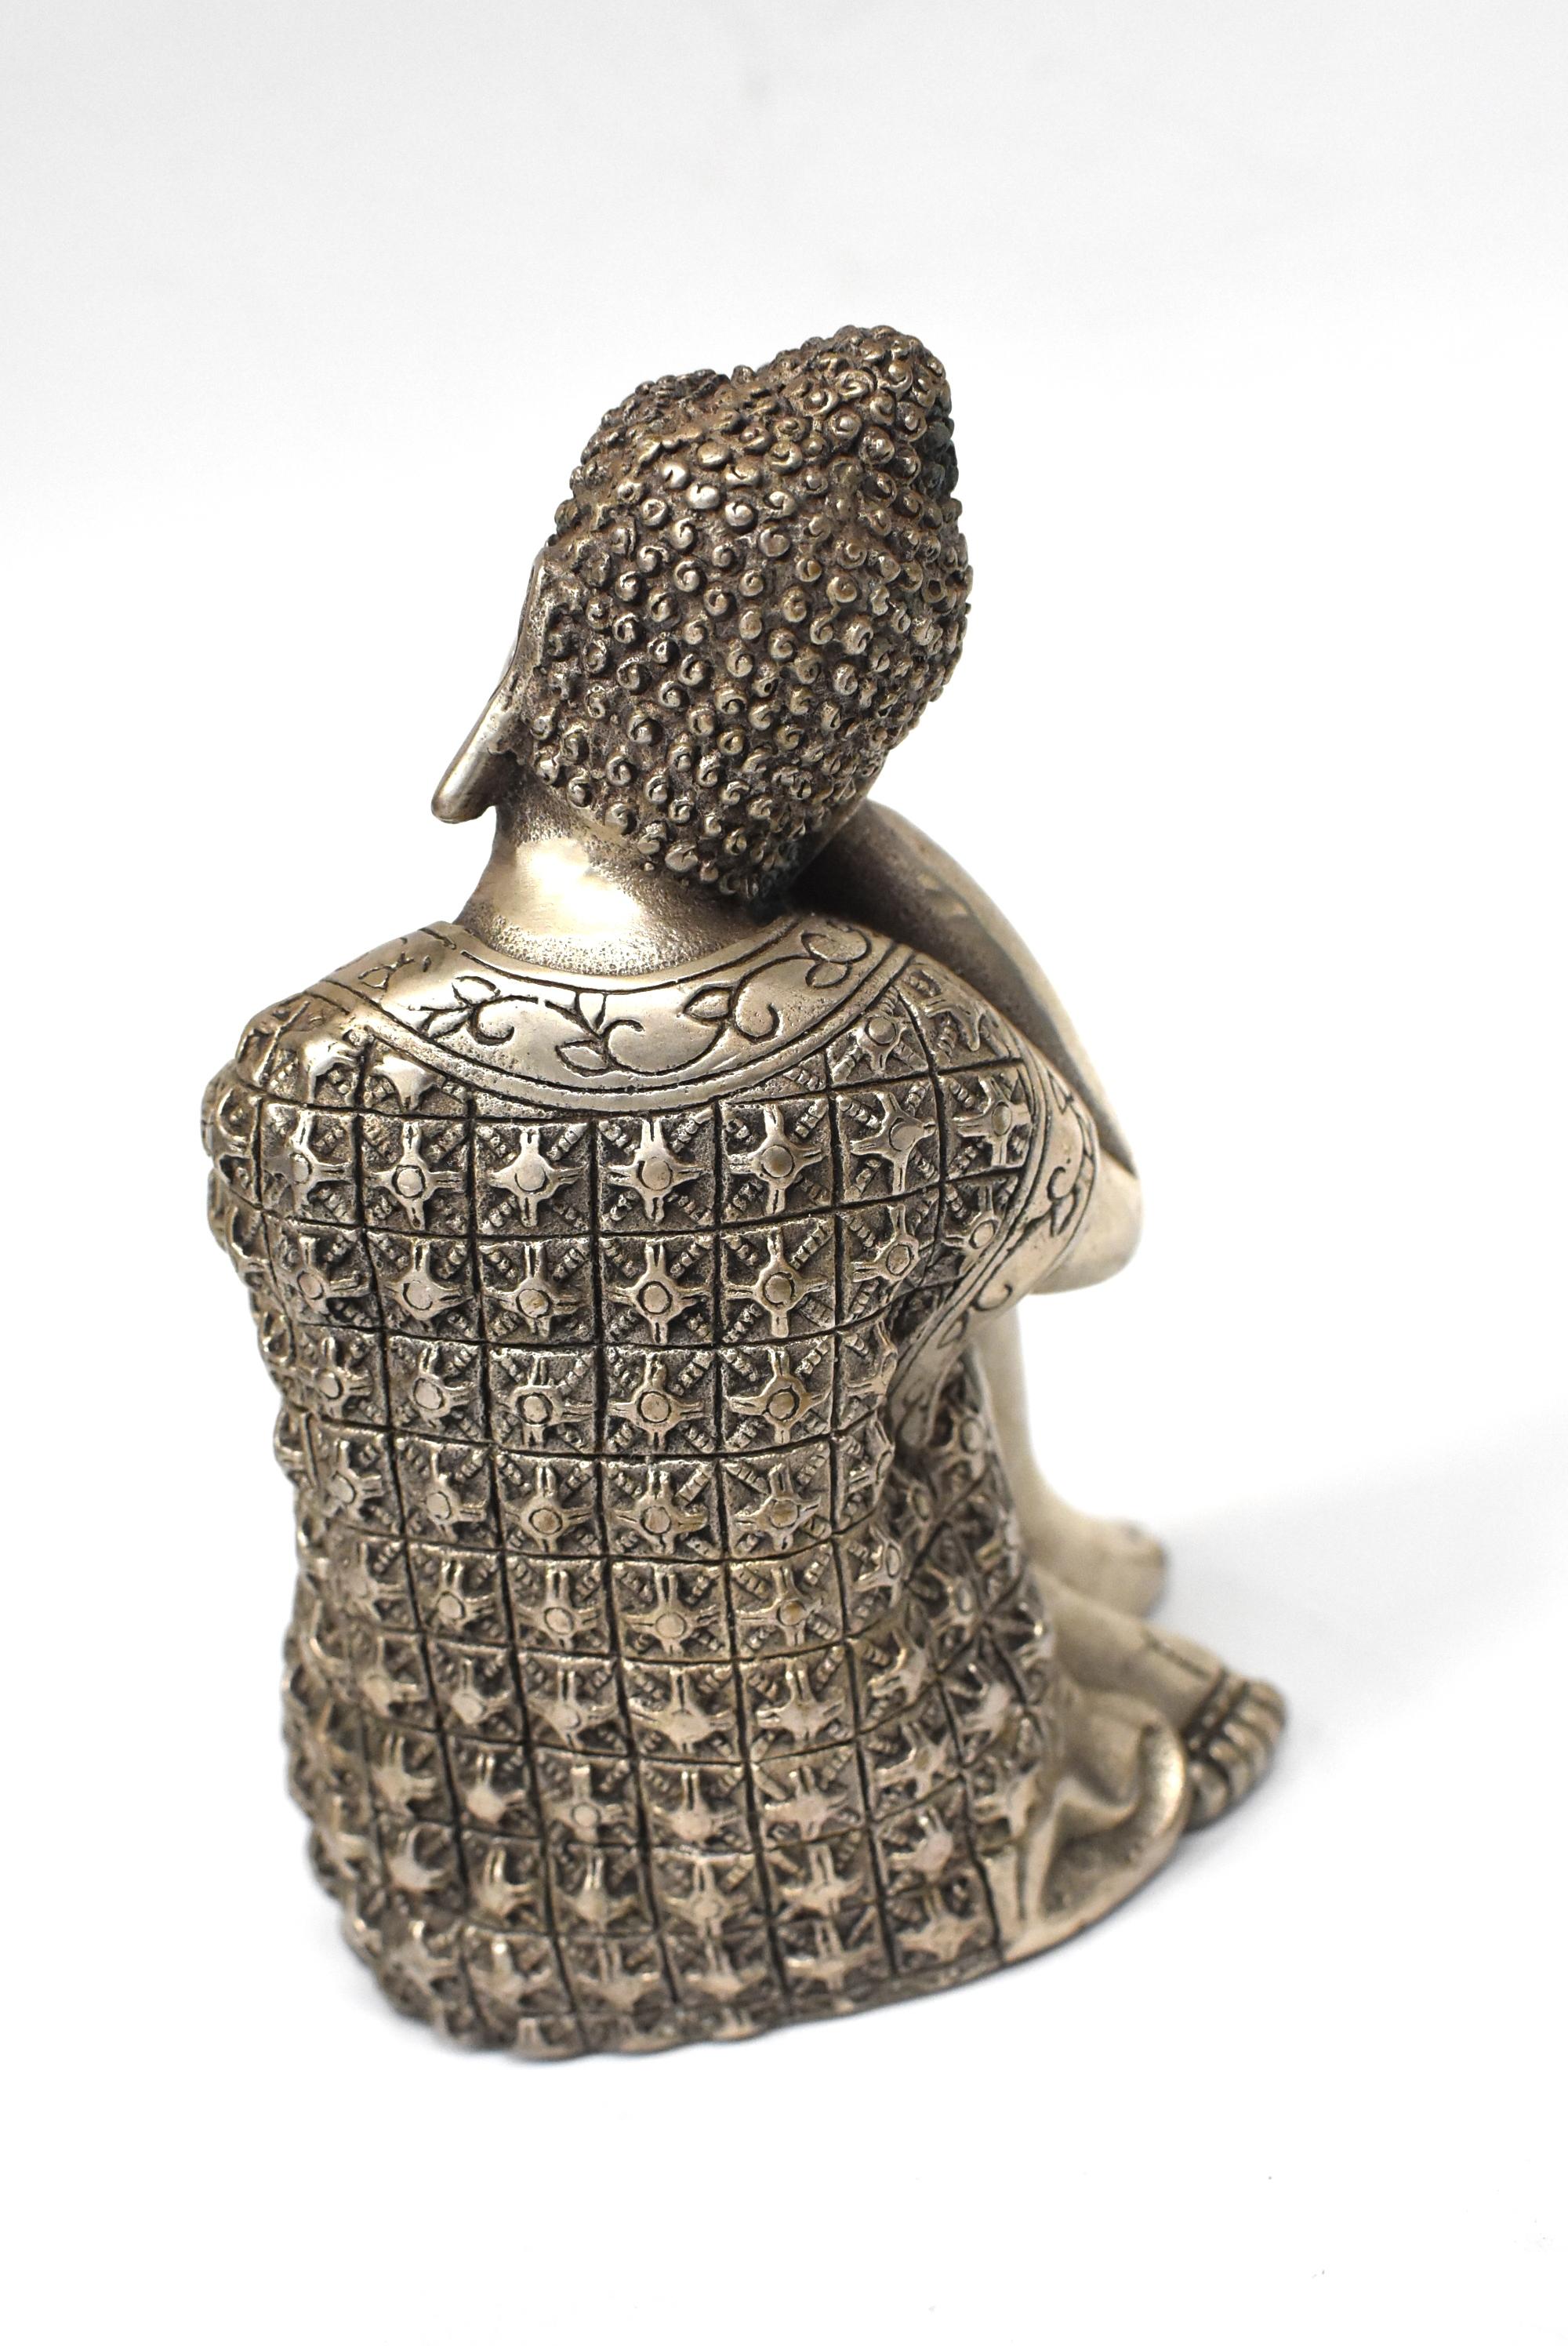 Silvered Brass Buddha Statue, a Thinking Buddha 3